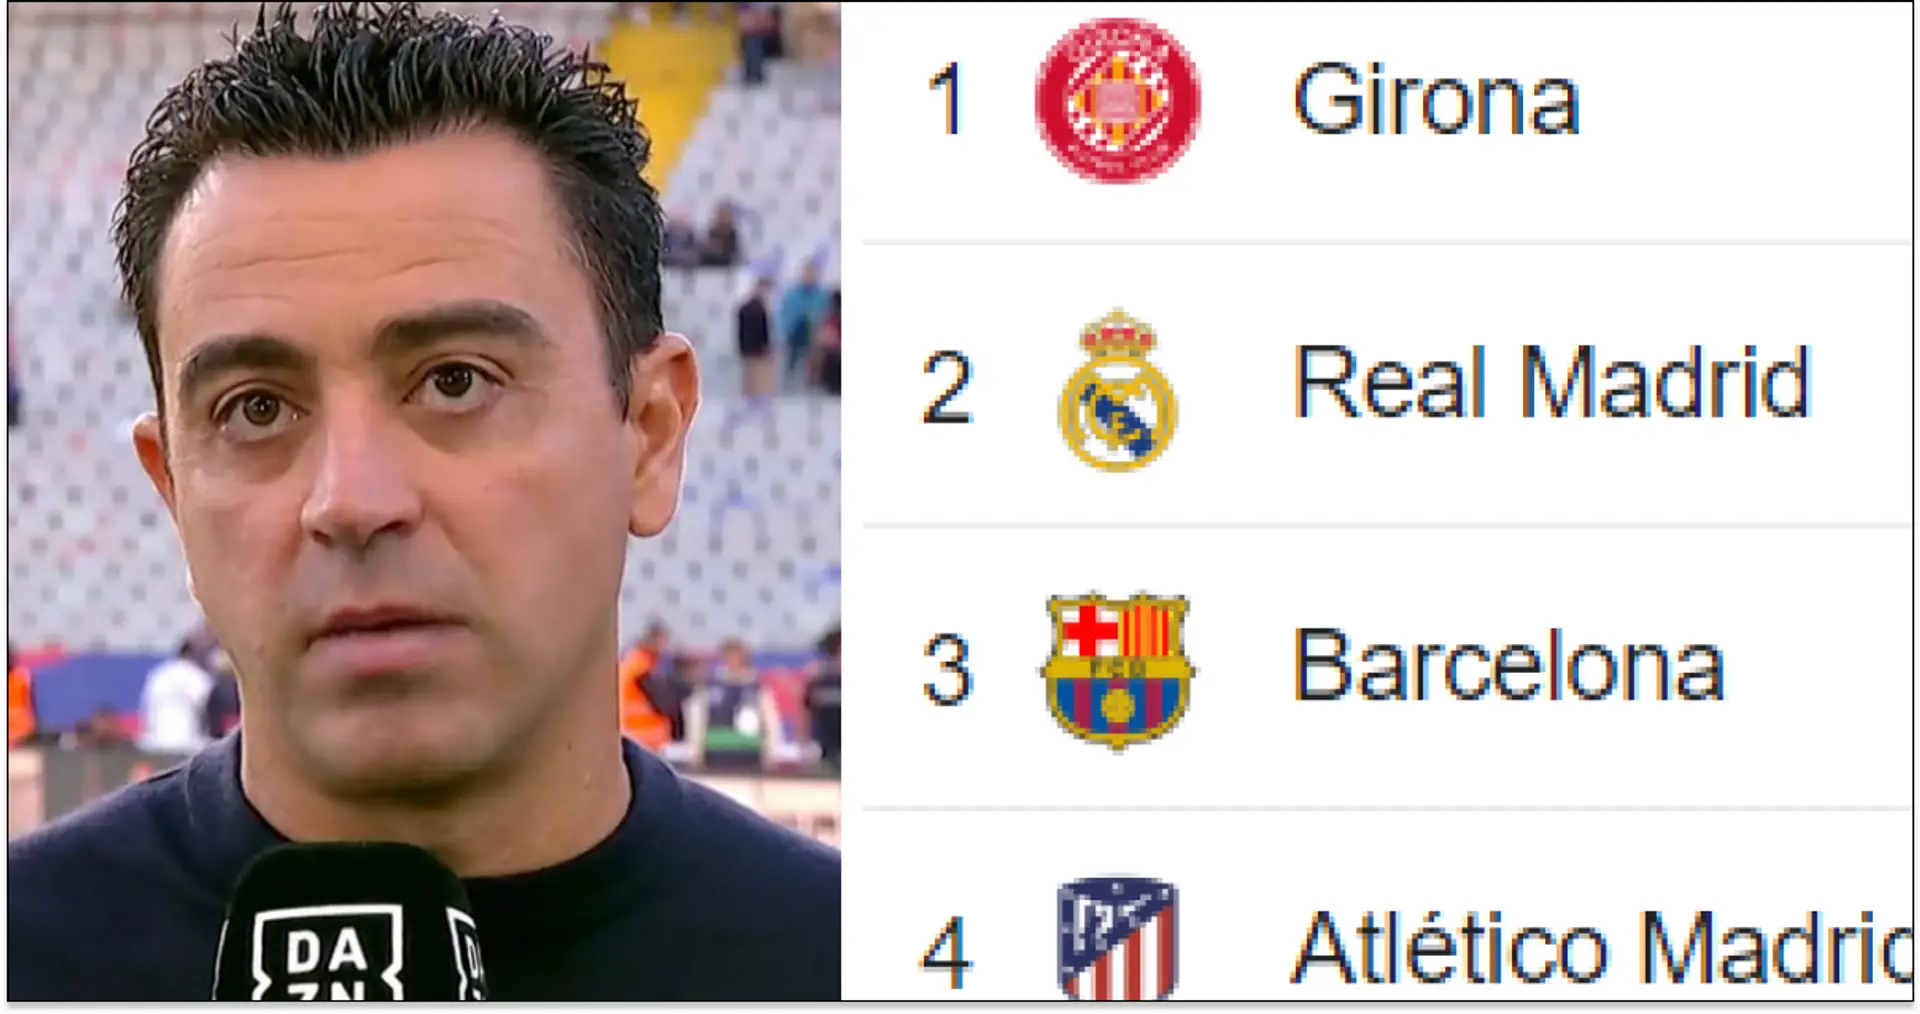 El Girona en primero tras el error del Madrid: clasificación actual de La Liga